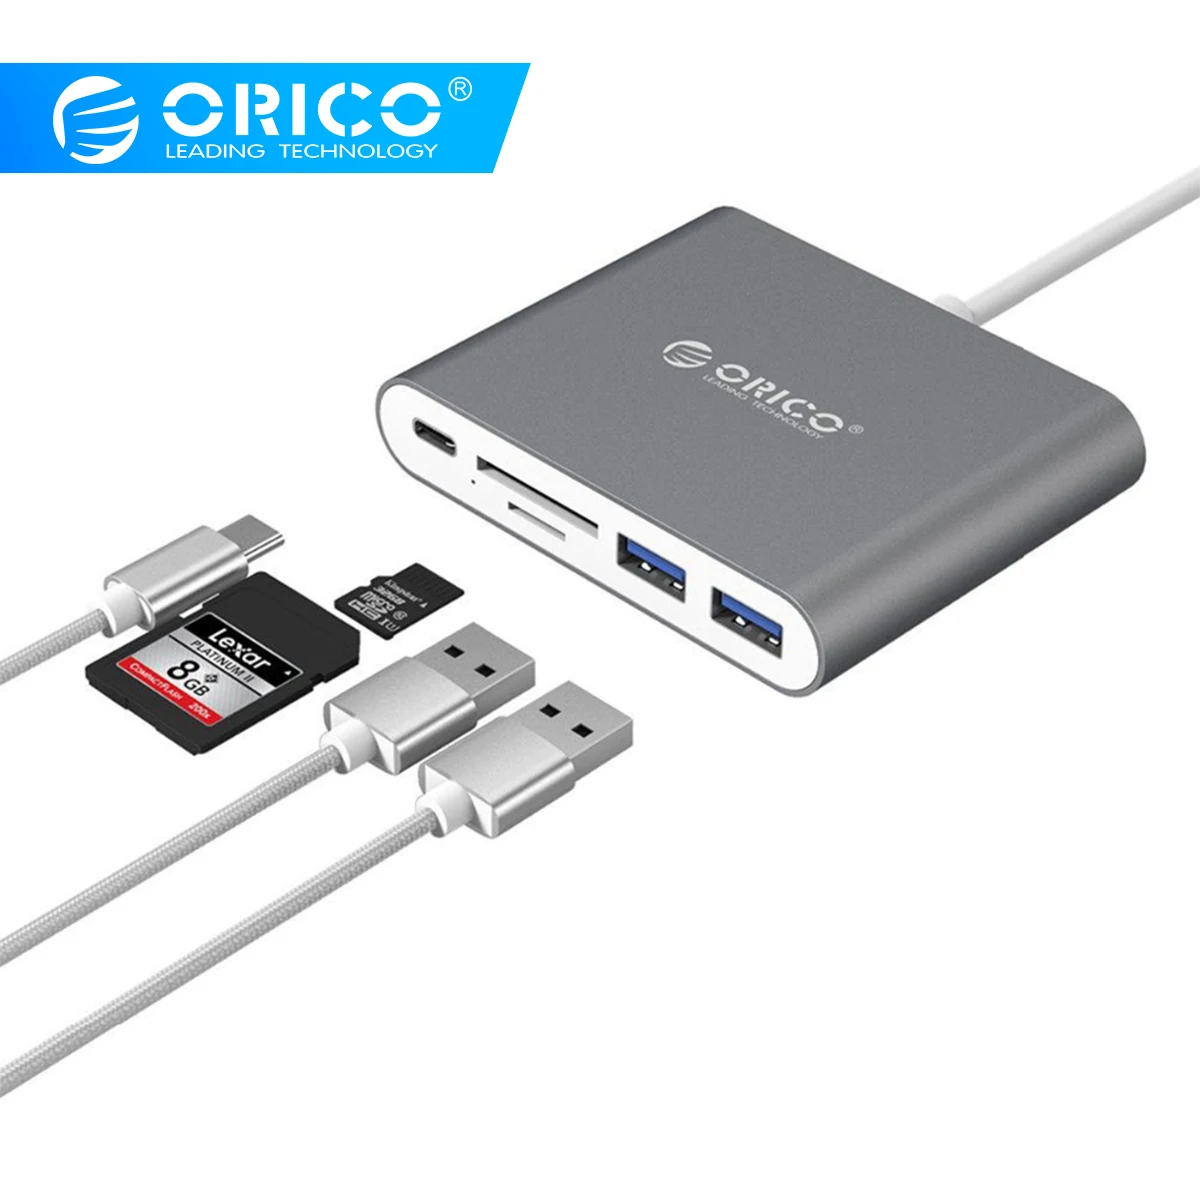 ORICO алюминиевый тип-c устройство для чтения карт SD TF с 2 портами USB3.0 поддержка PD зарядки ноутбука док-станции usb-хаб